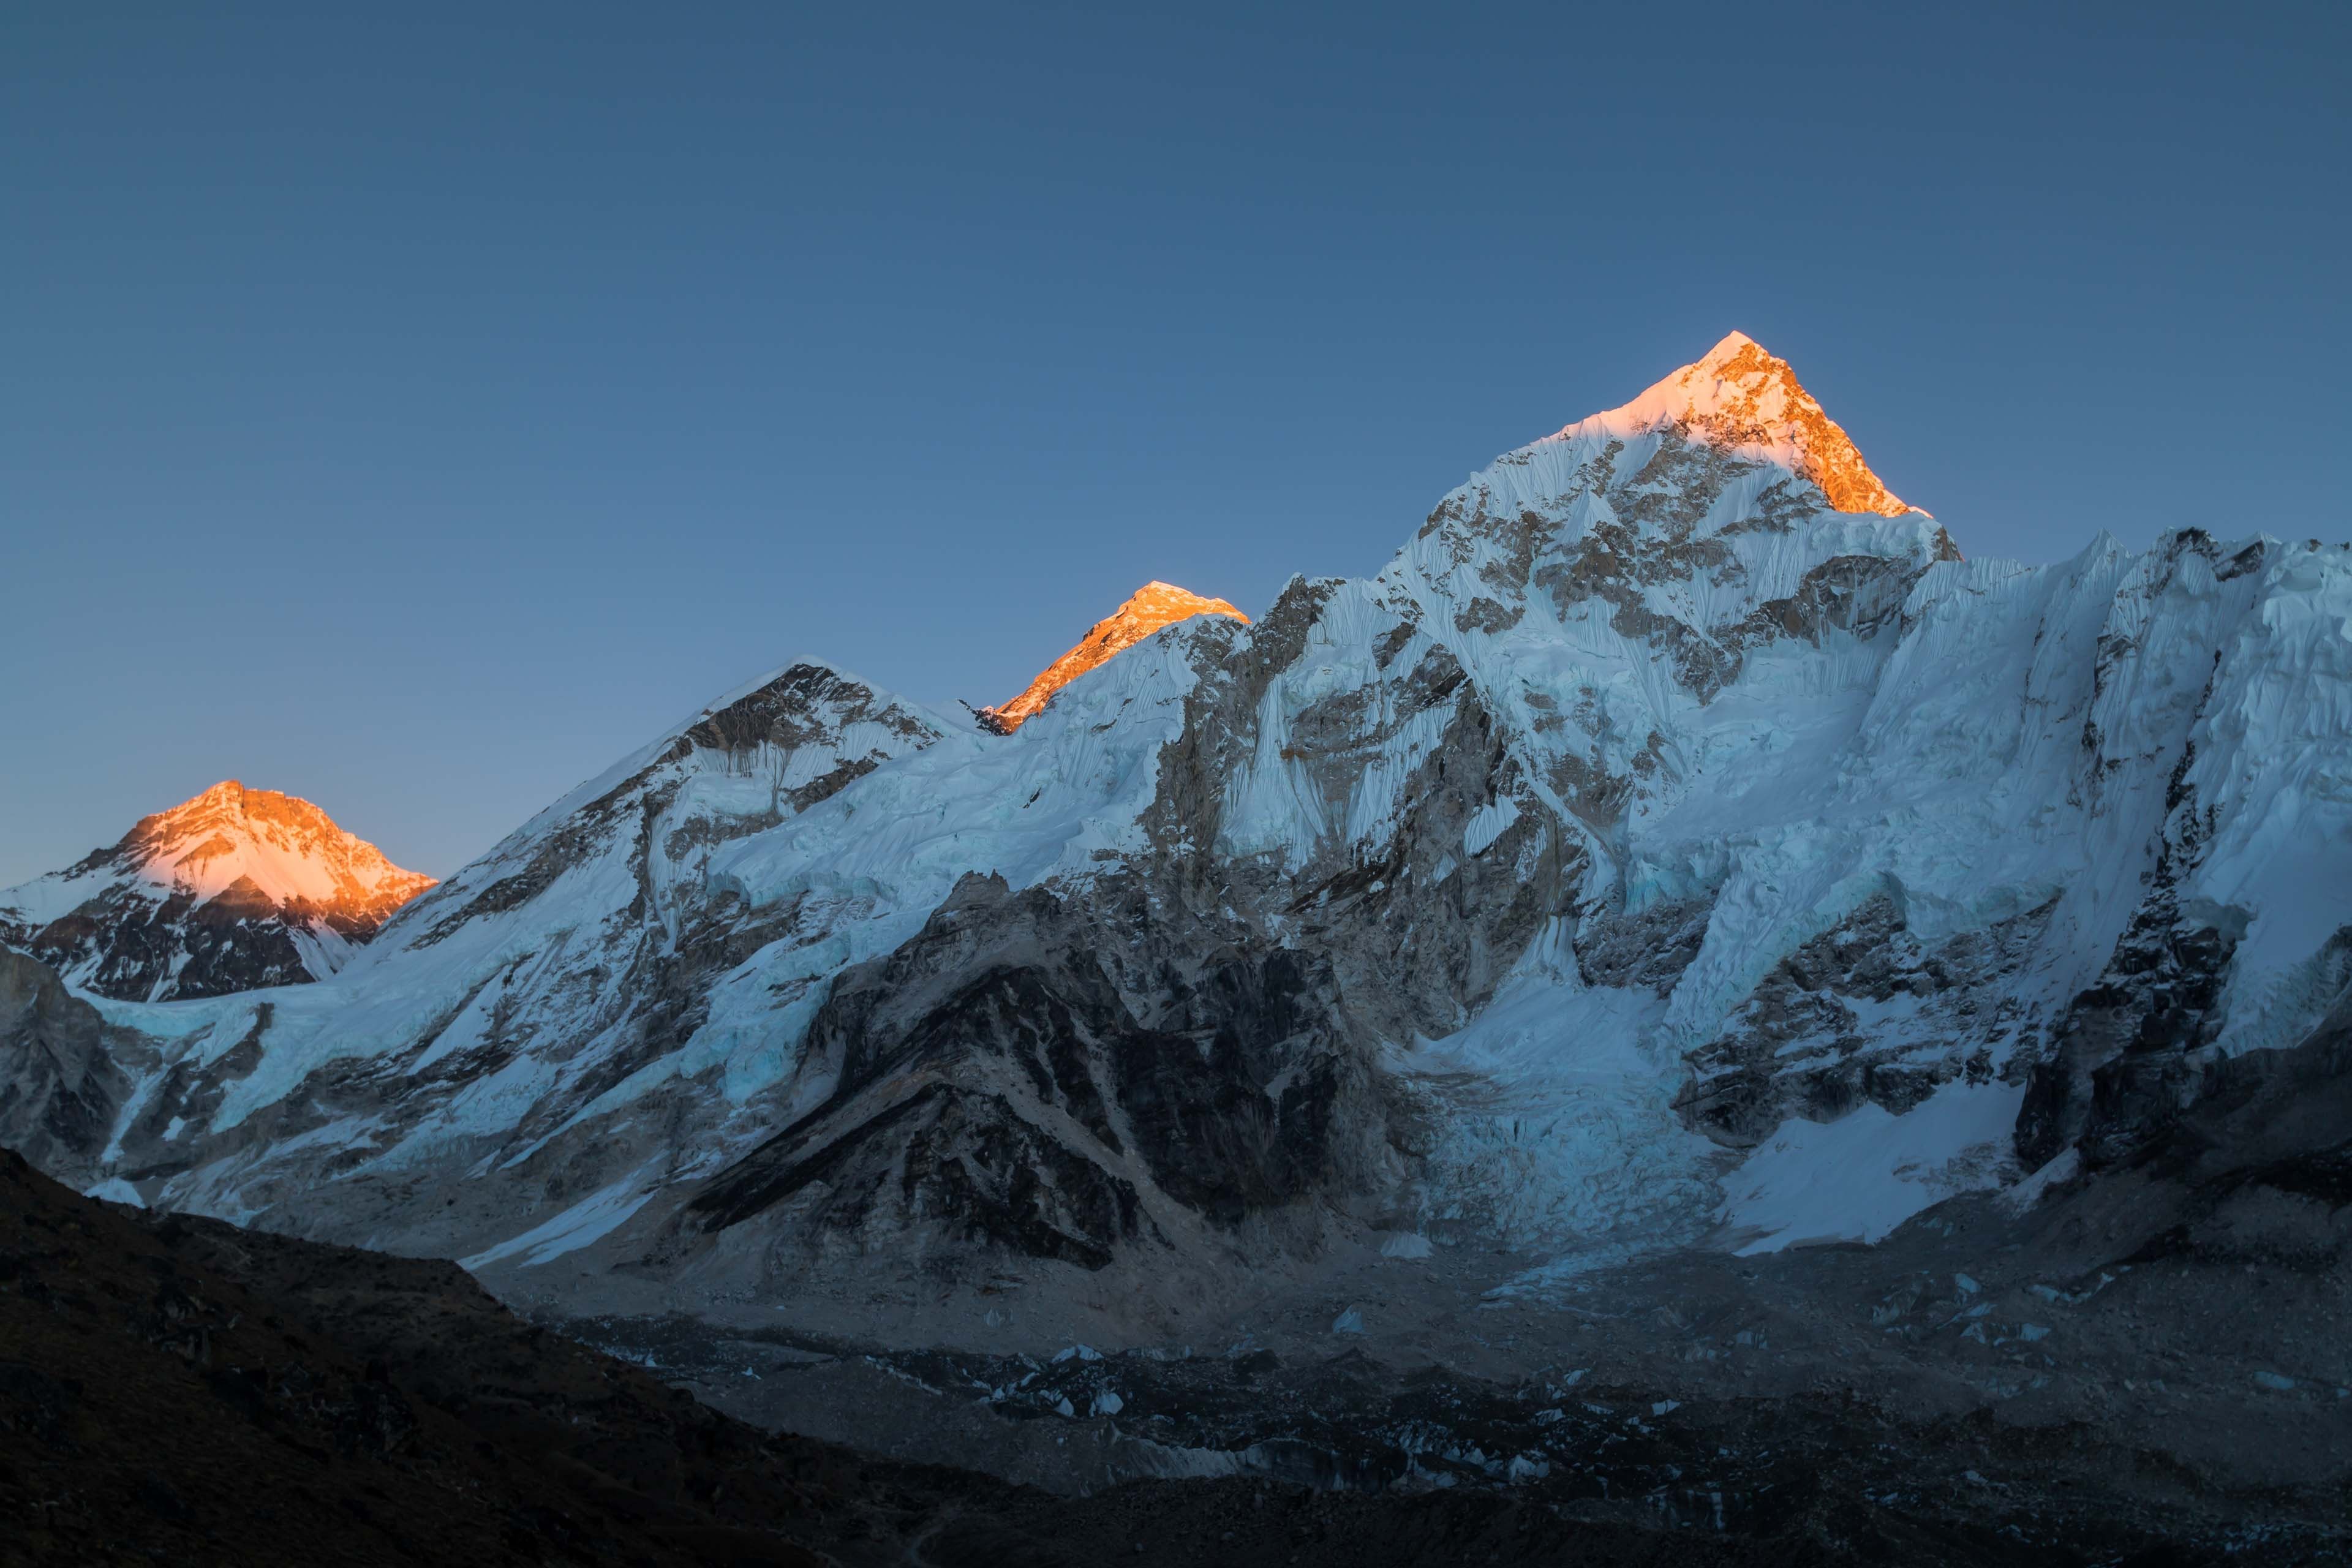 Everest Basiskamp Trek: Reis naar de Top van de Wereld